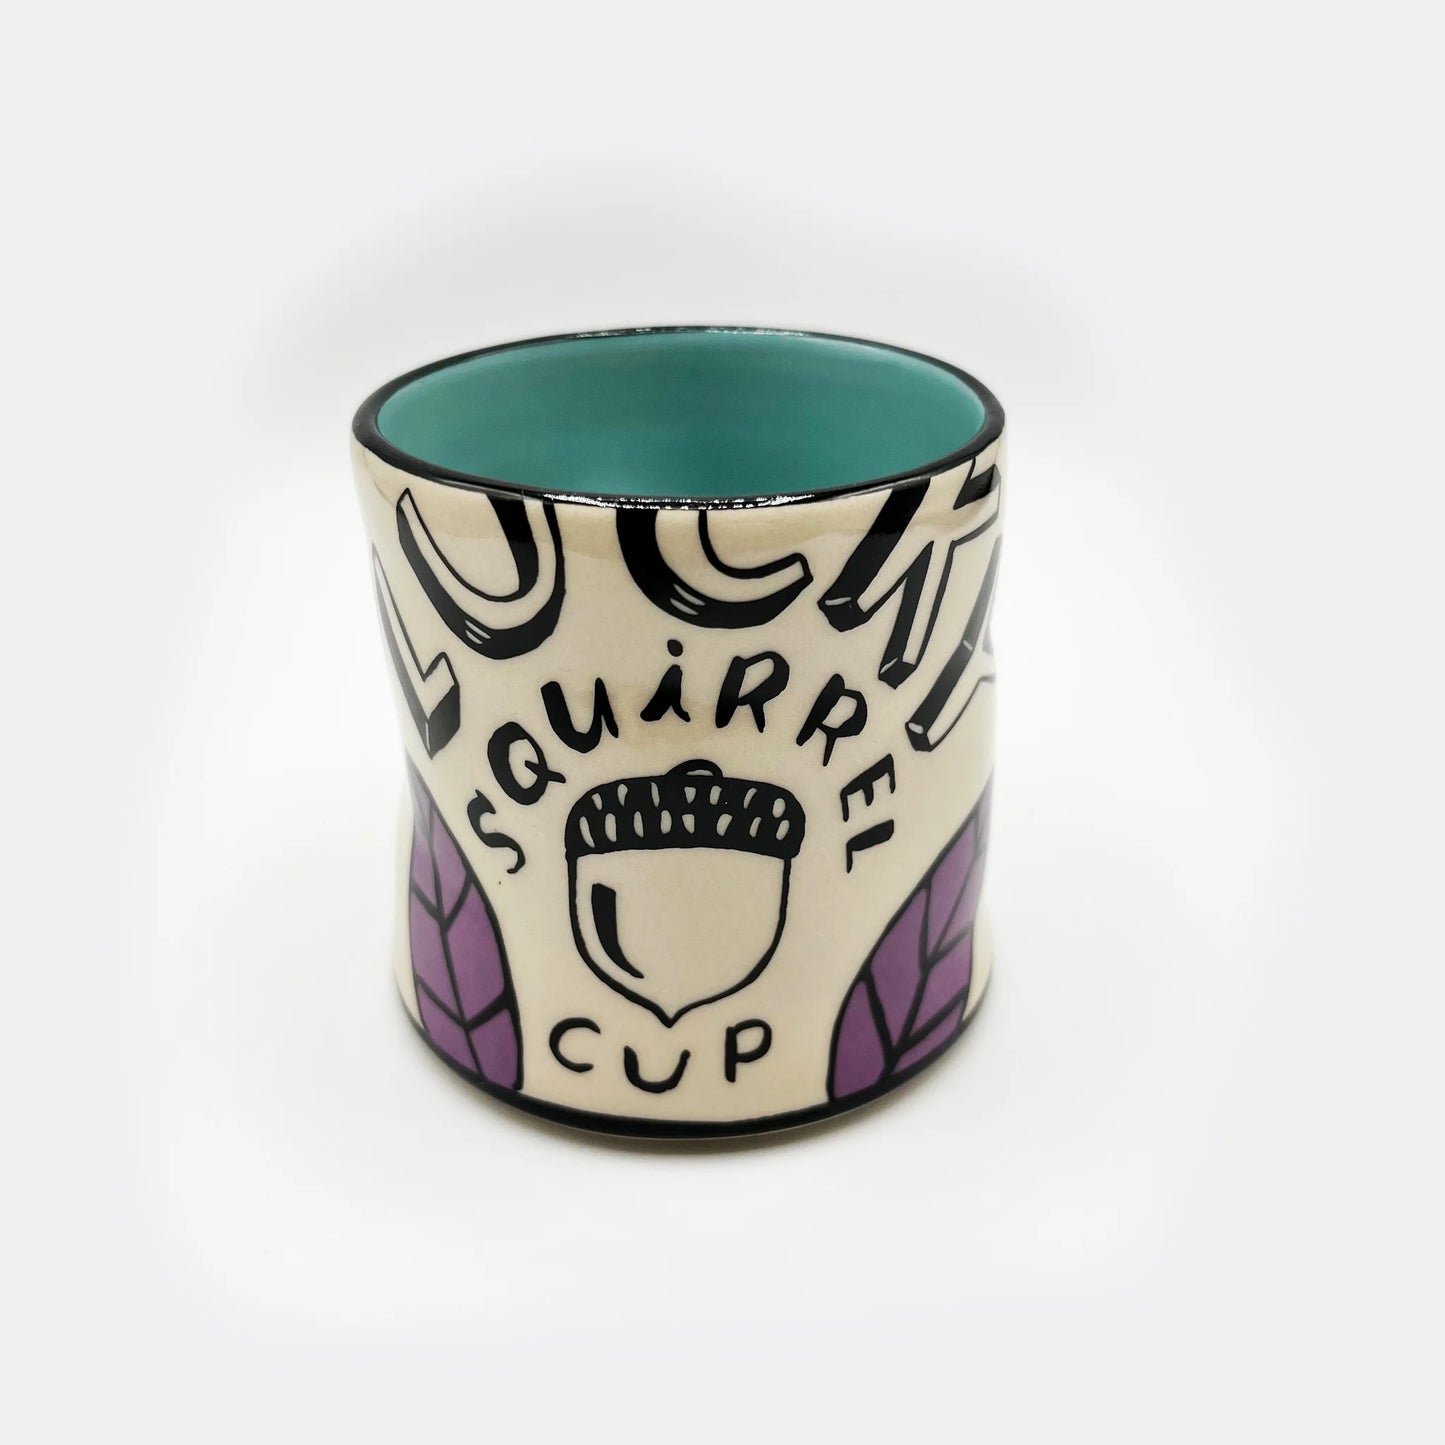 Lucky Squirrel Cup - 6oz, Medium